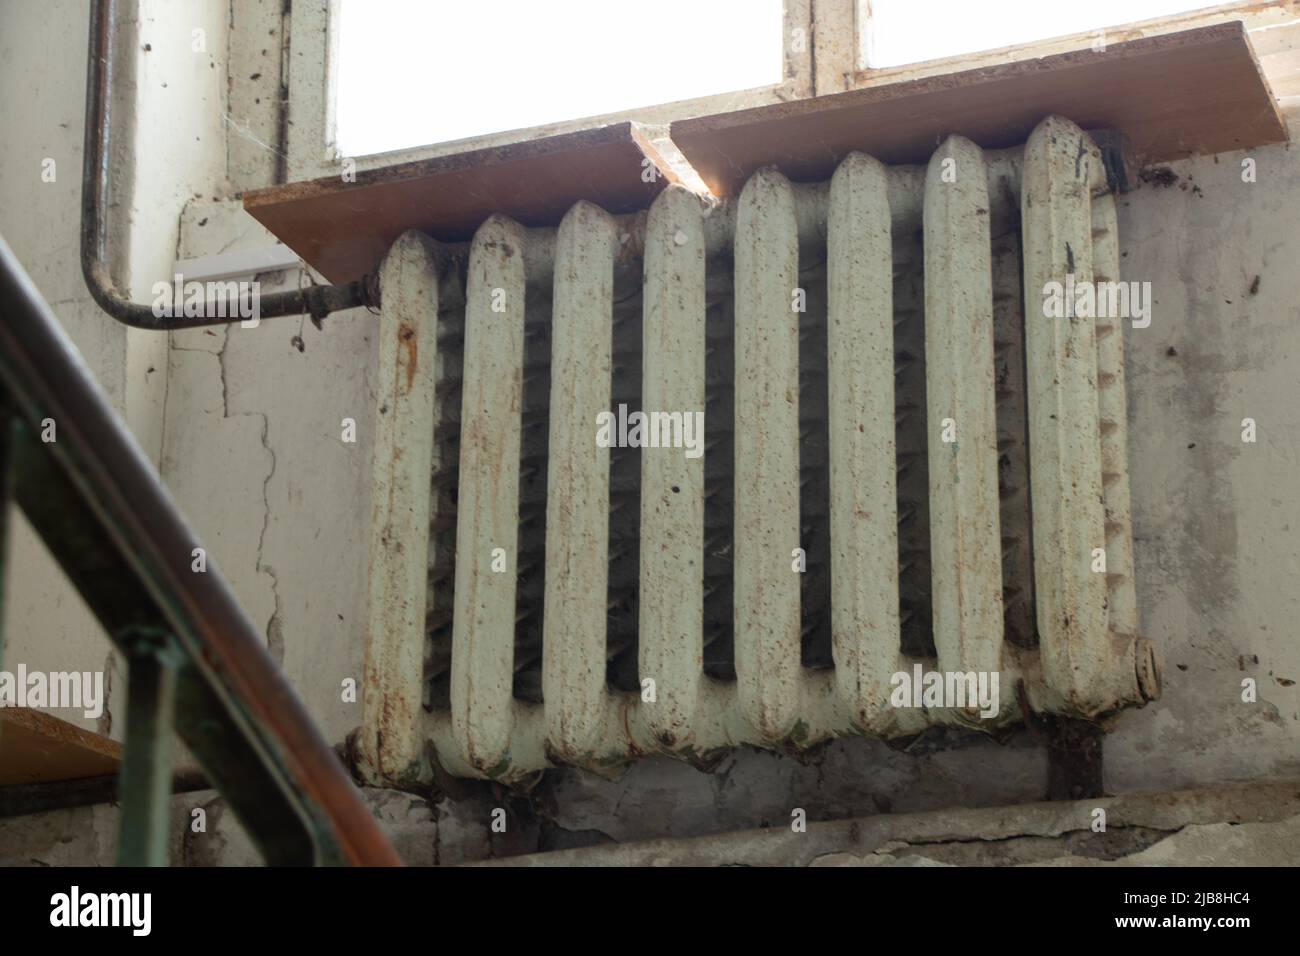 Eine alte rostige gusseiserne Batterie hob die Fenster am Eingang eines mehrstöckigen Gebäudes in der Ukraine an, heizte das Haus, die Batterie im Haus i Stockfoto